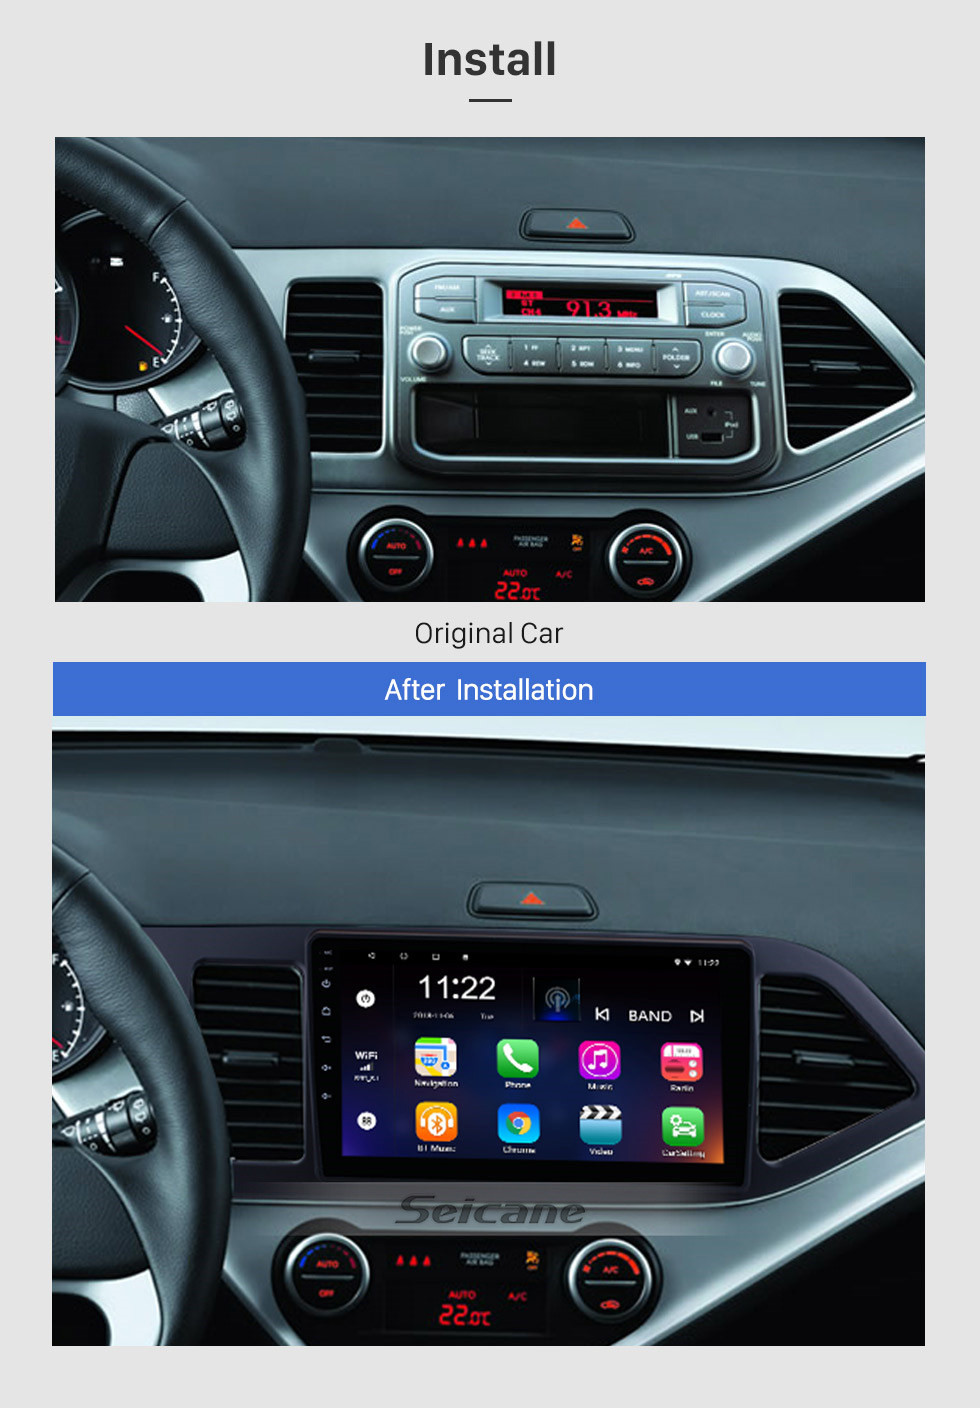 Seicane 9 pouces Android 13.0 GPS Radio pour 2011-2014 KIA PICANTO Matin (LHD) 1024 * 600 Écran tactile Système de navigation Bluetooth Lien de rétroviseur OBD2 DVR Caméra de recul TV 3G WIFI USB SD 16G Flash 1080P Vidéo